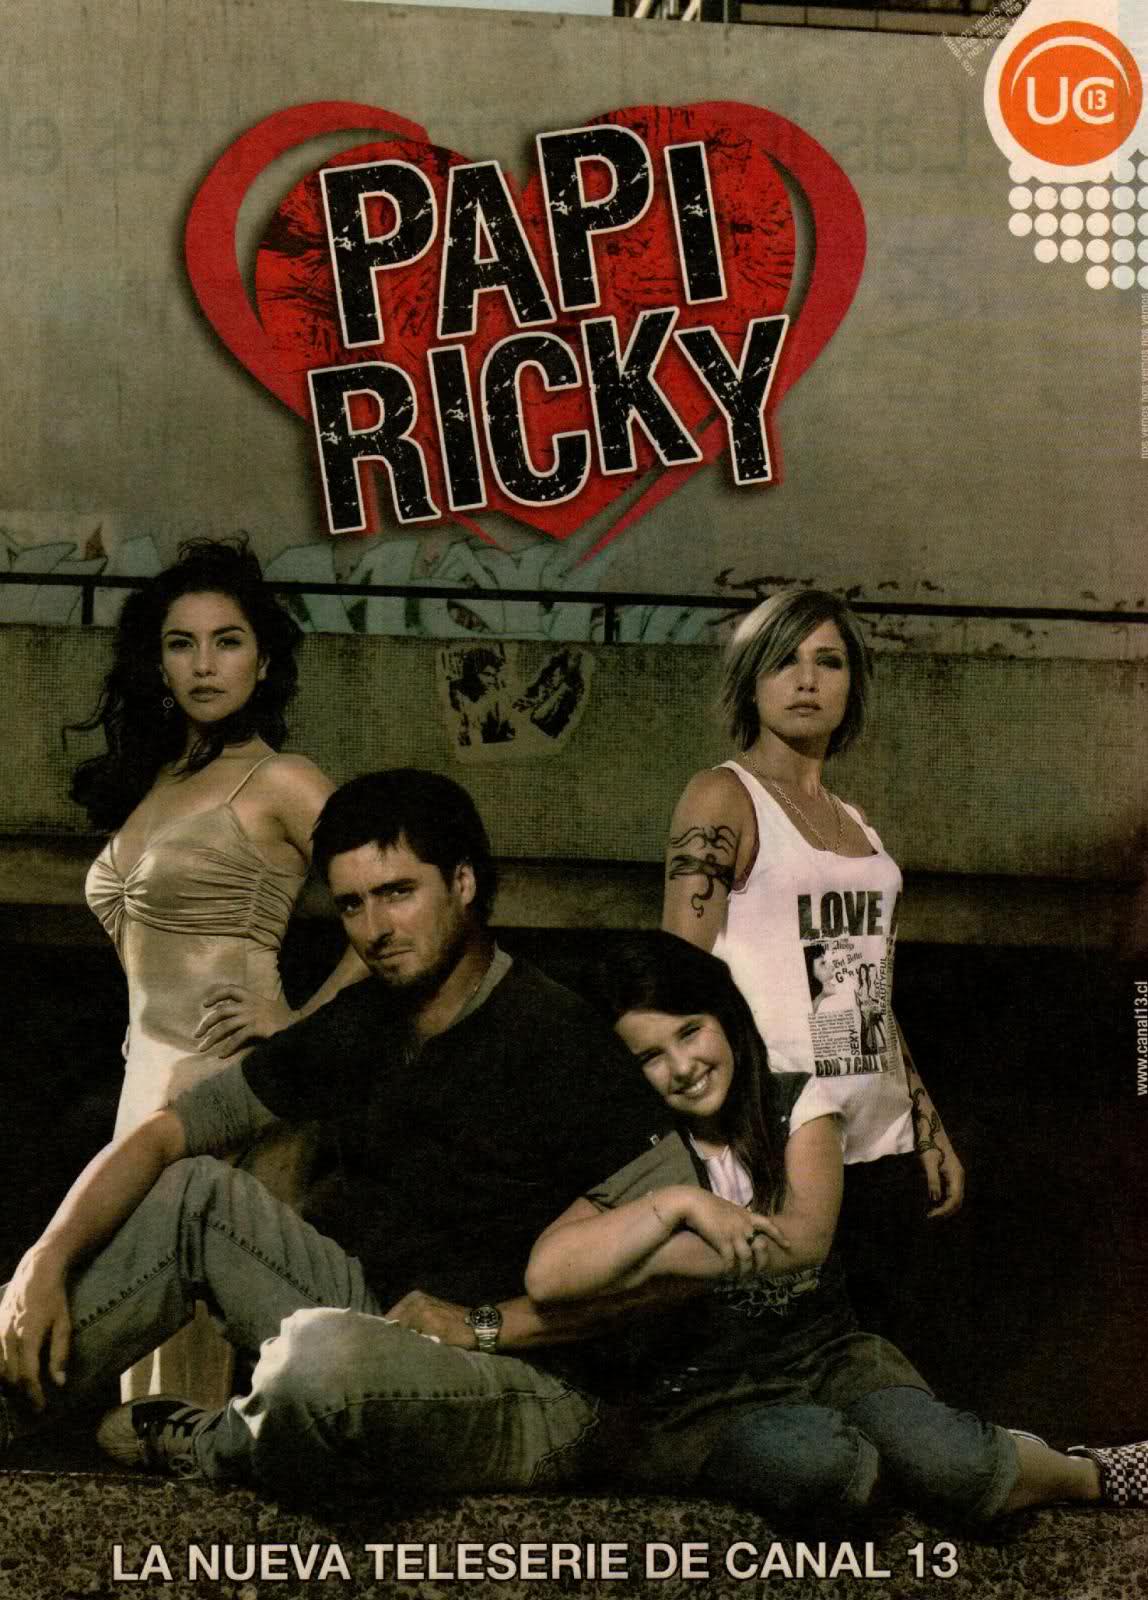 Mario Horton in Papi Ricky (2007)